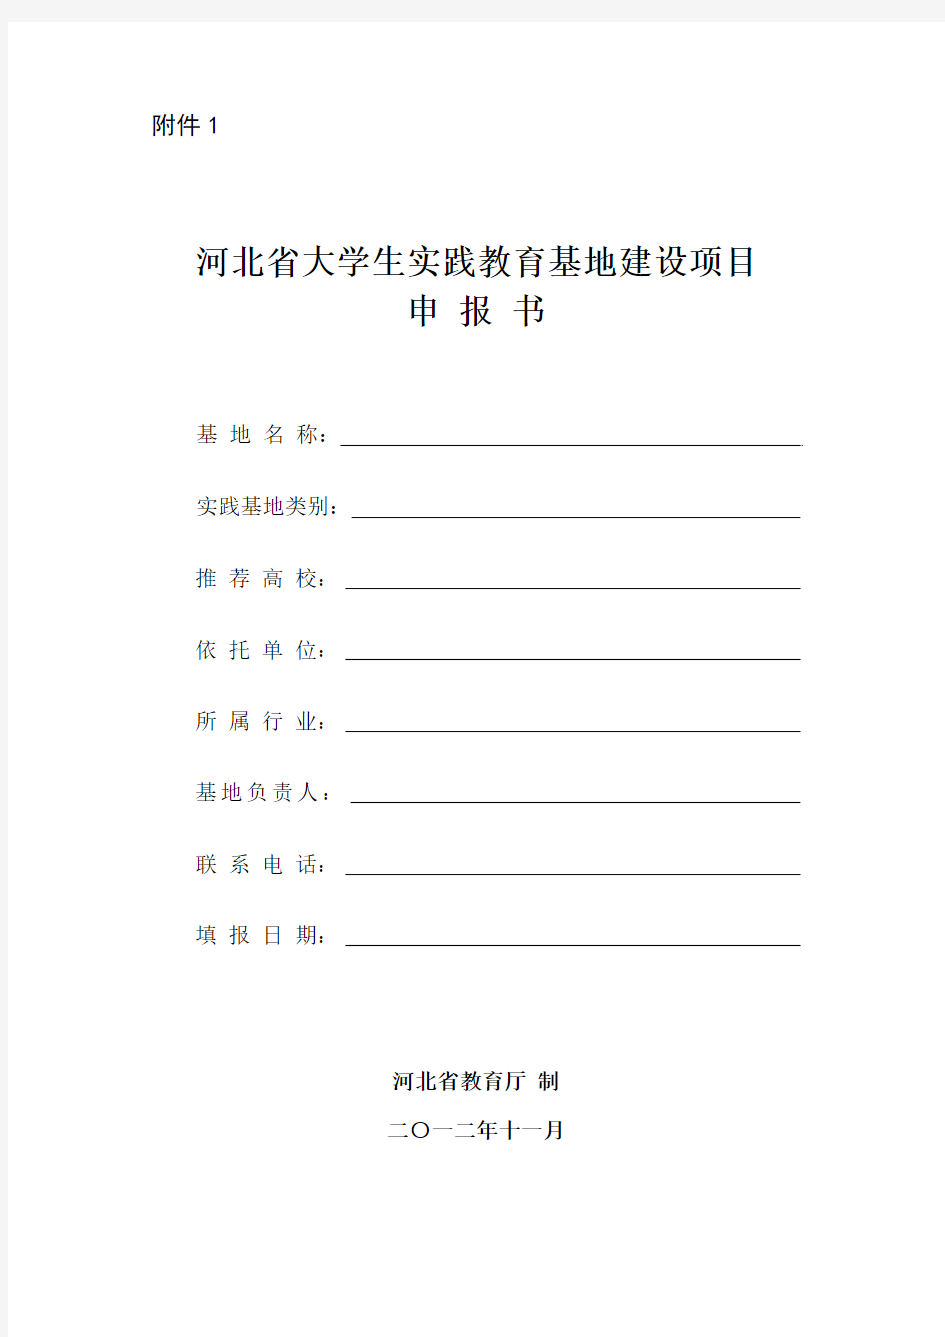 河北省大学生实践教育基地建设项目 申 报 书